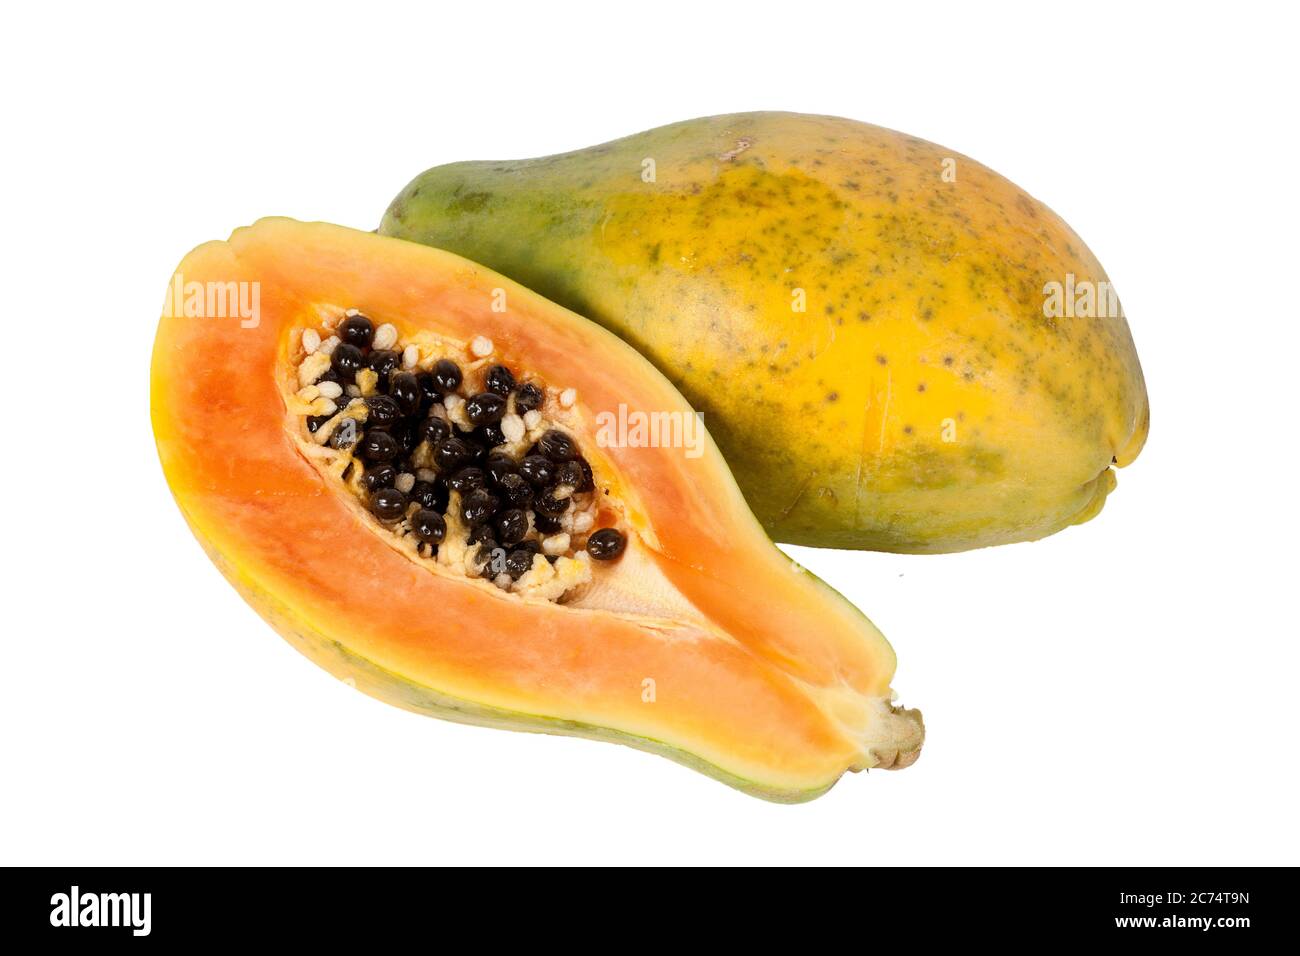 Frutta organica grezza di papaia affettata a metà che hanno molti benefici antiossidanti di nutrizione alimentare salute tagliato fuori e isolato su uno sfondo bianco Foto Stock